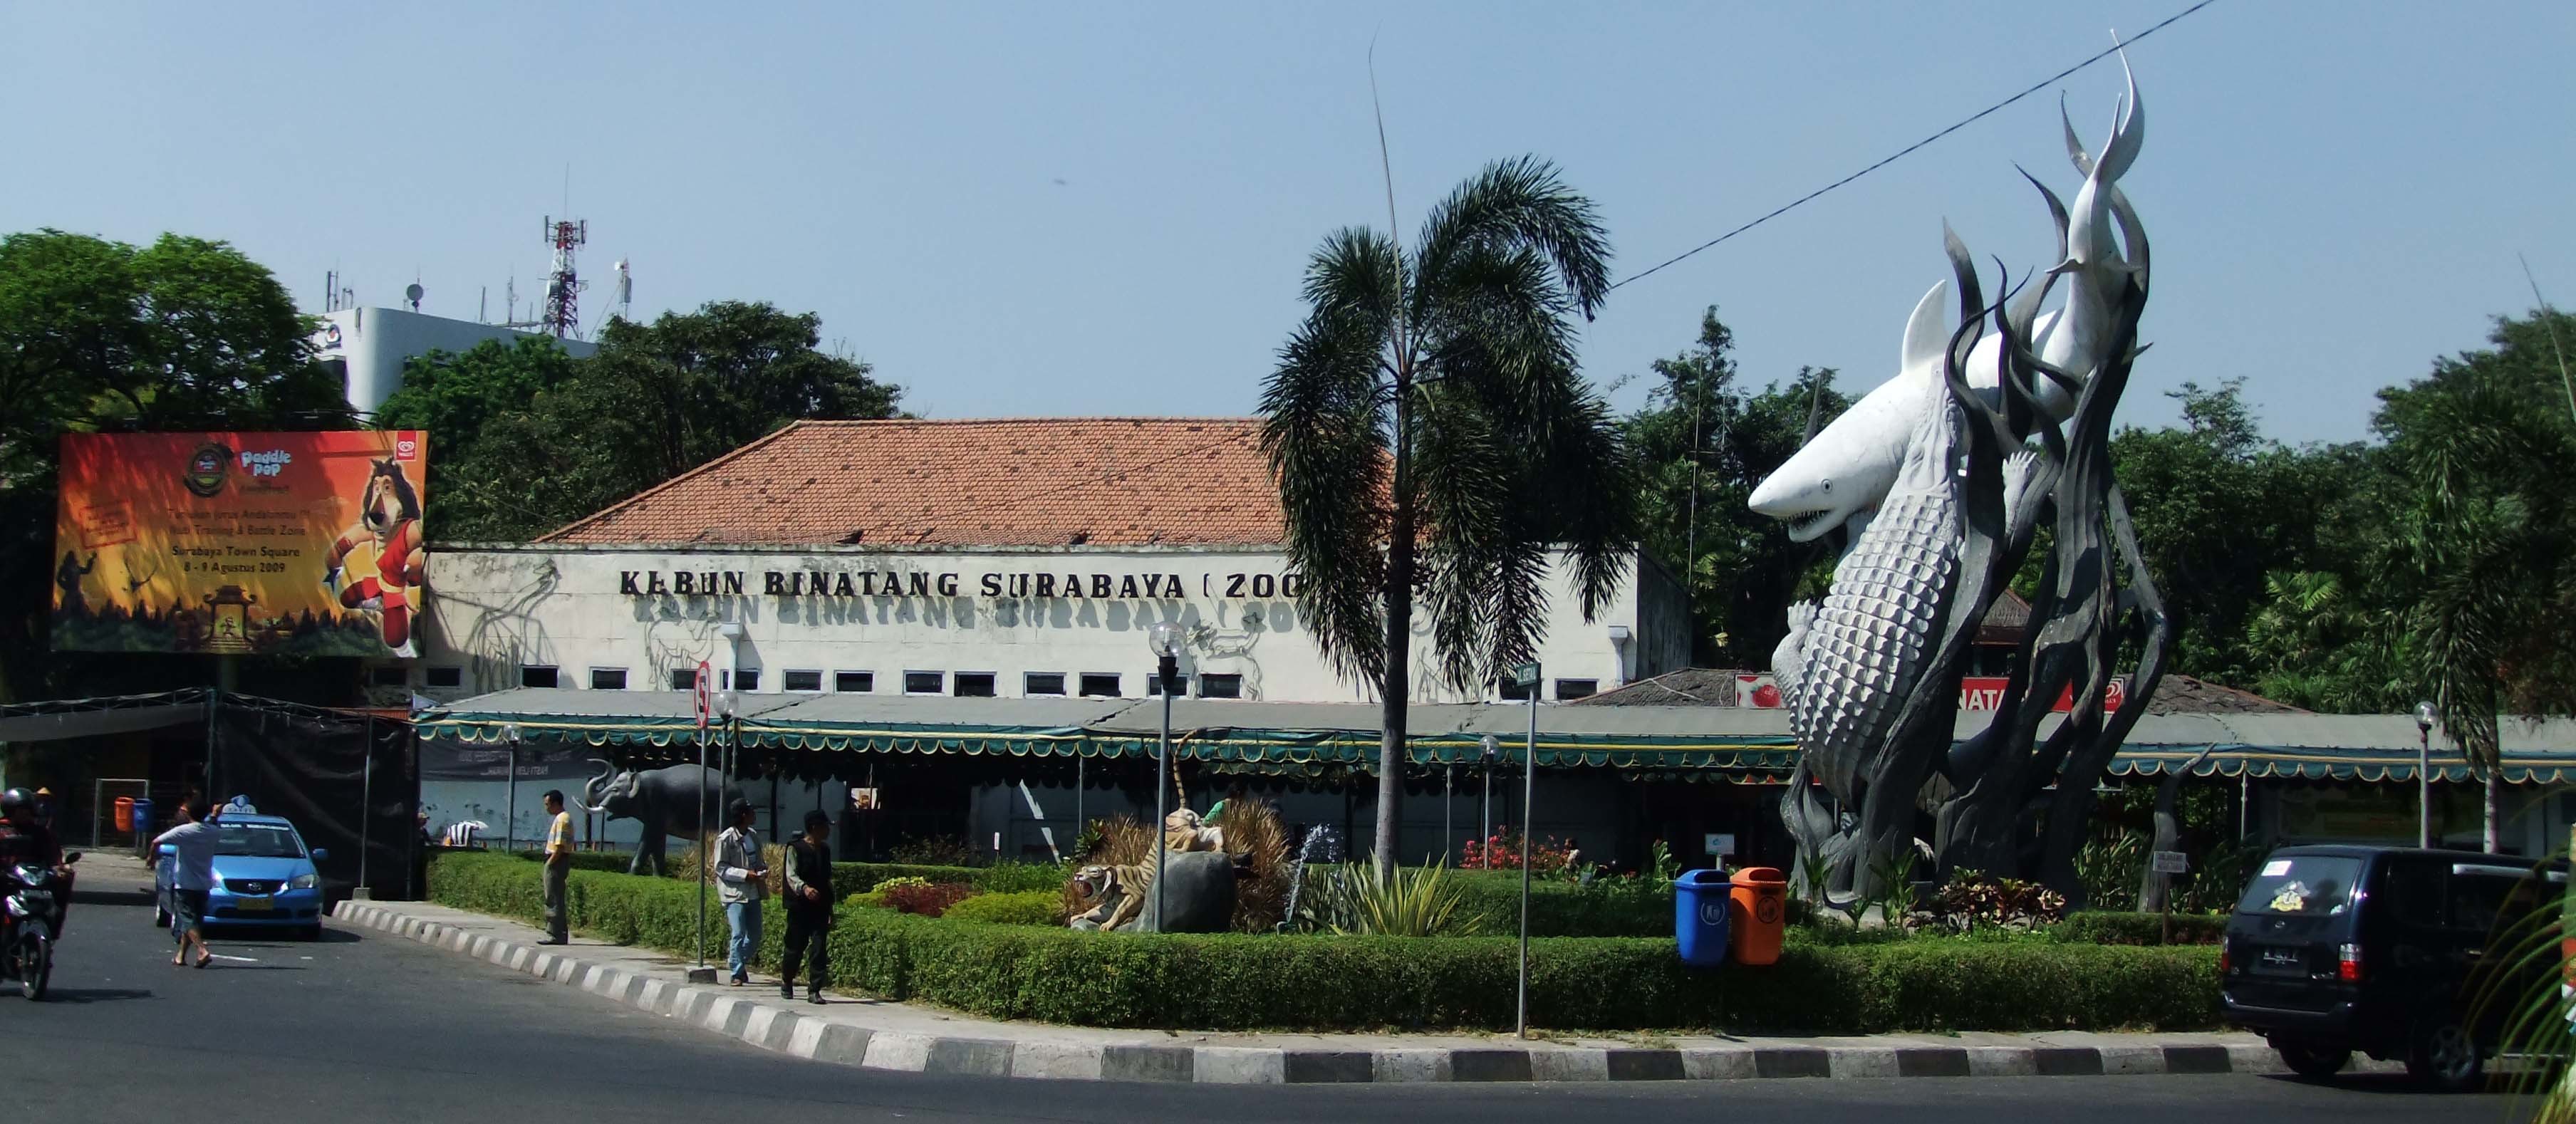 Surabaya Zoo in Surabaya - Attraction in Surabaya, Indonesia - Justgola